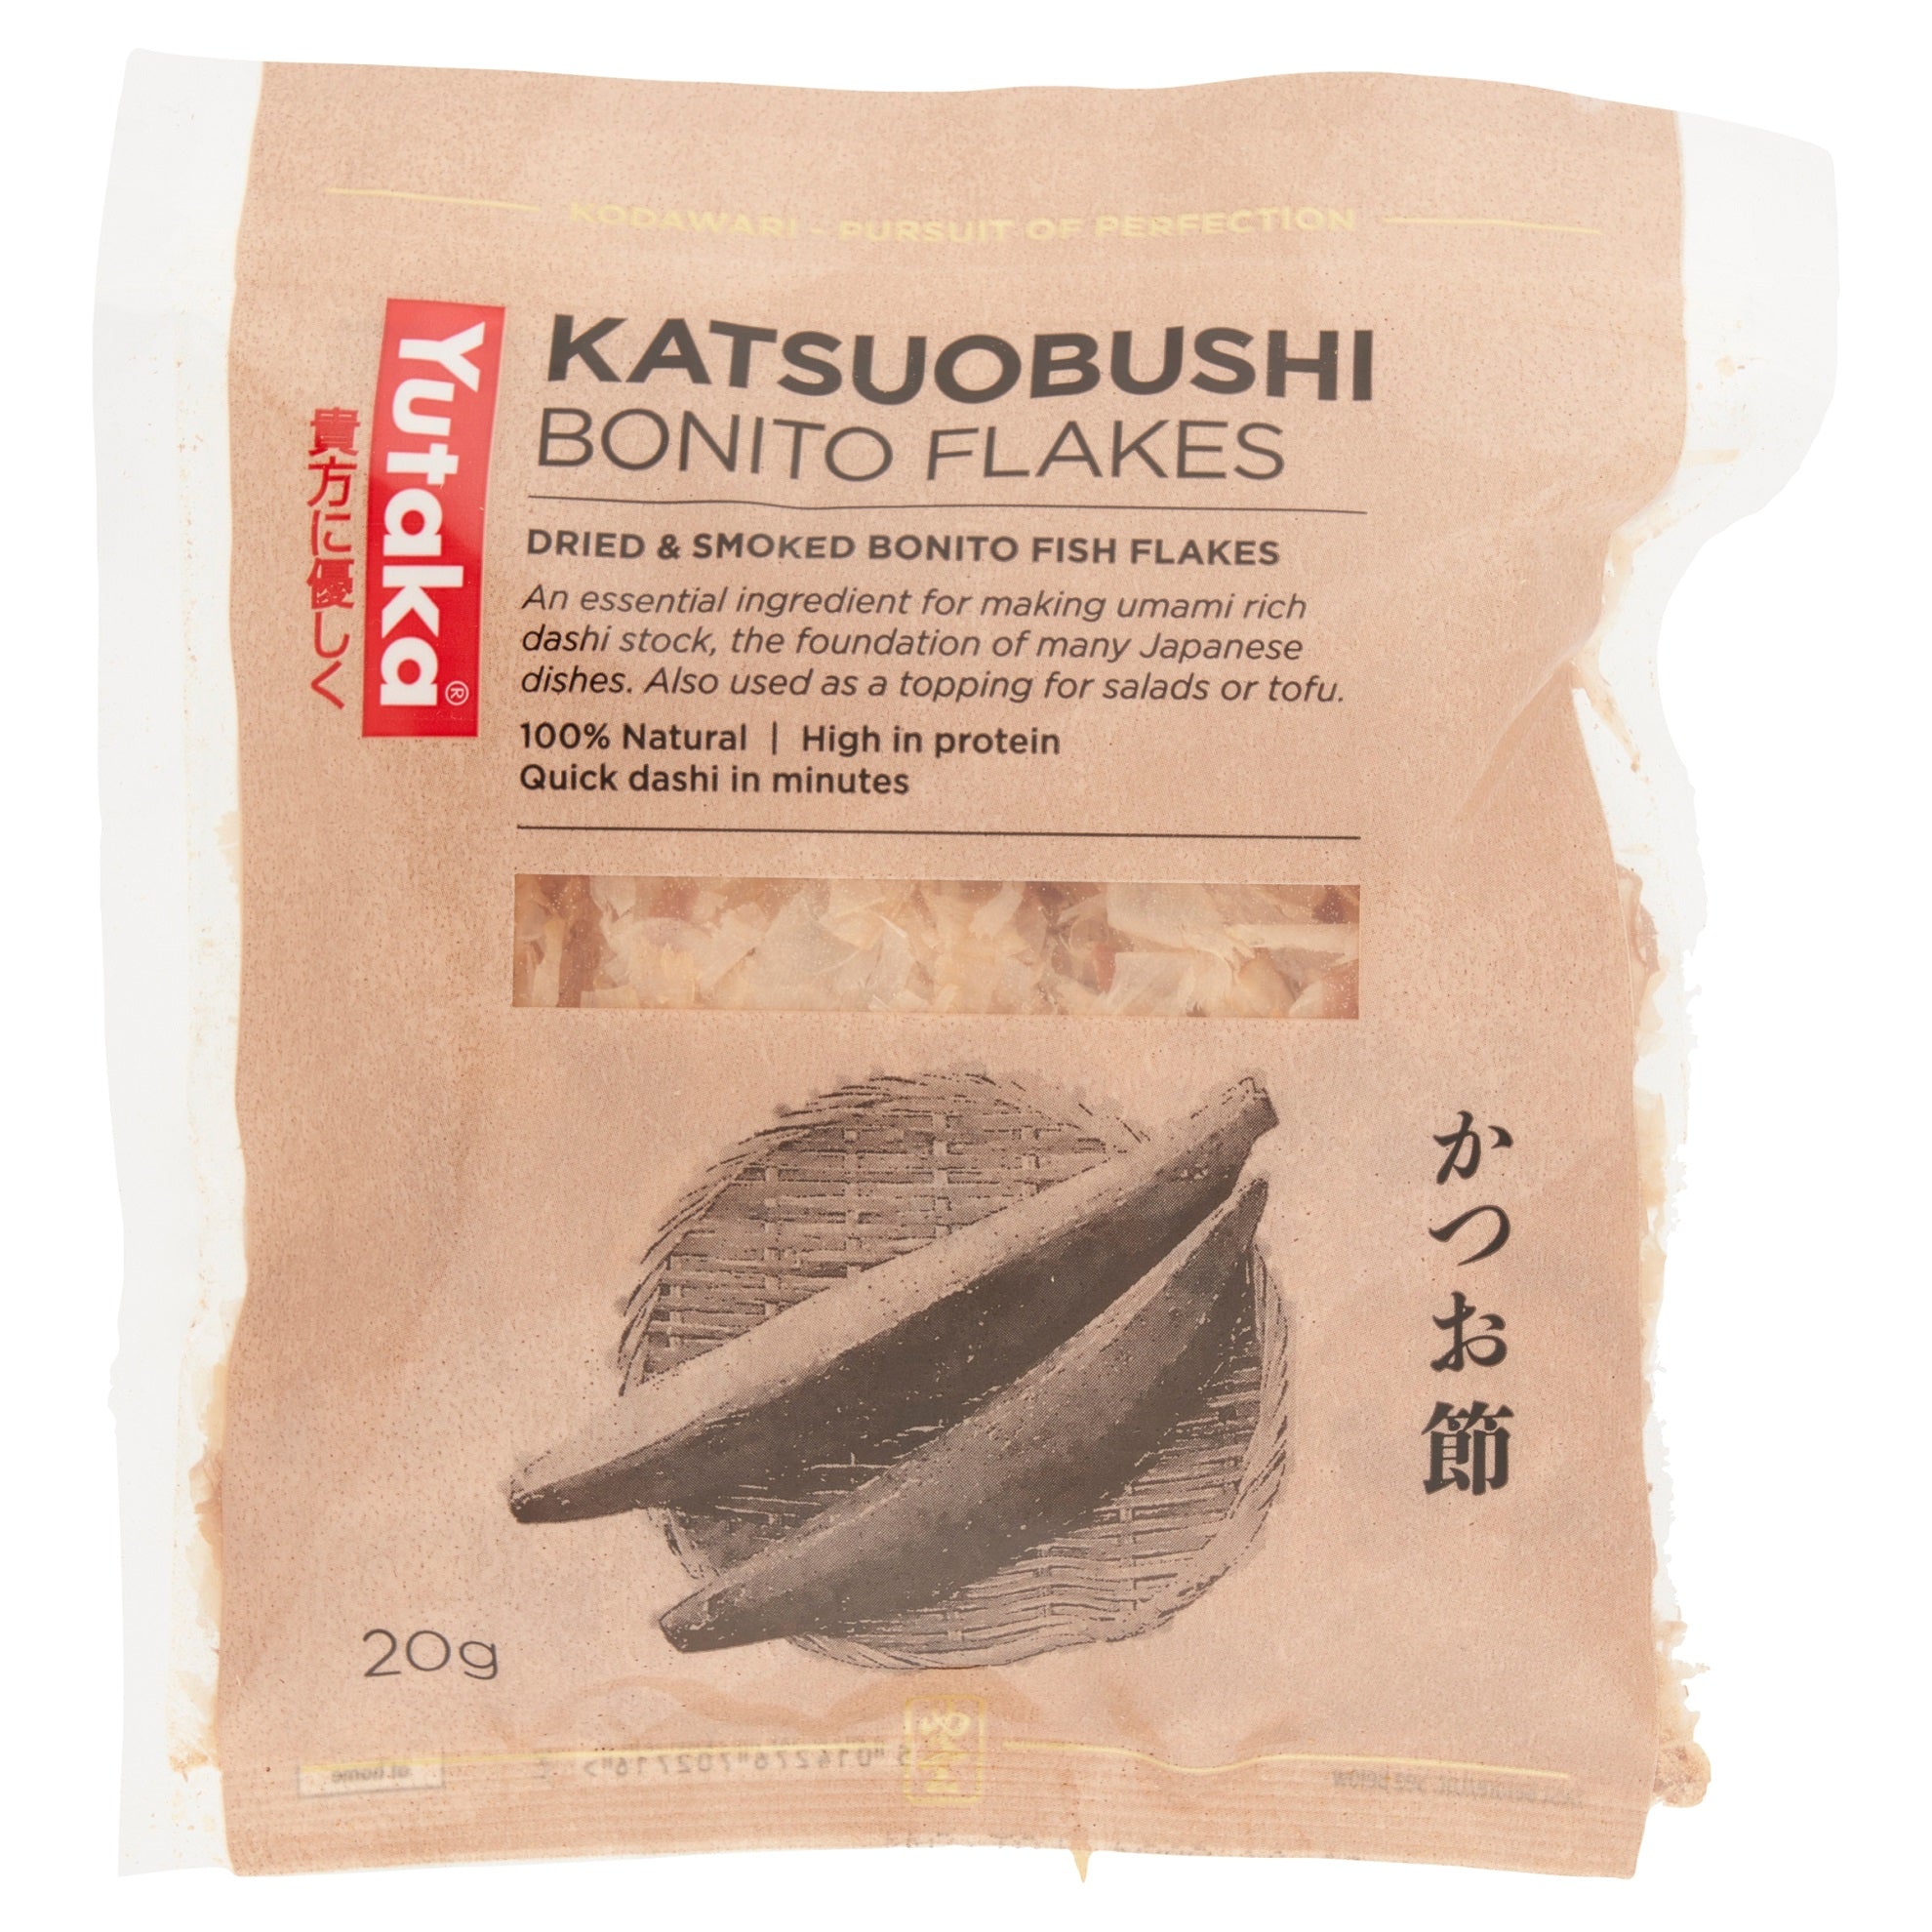 Bonito flakes - Katsuobushi 40g